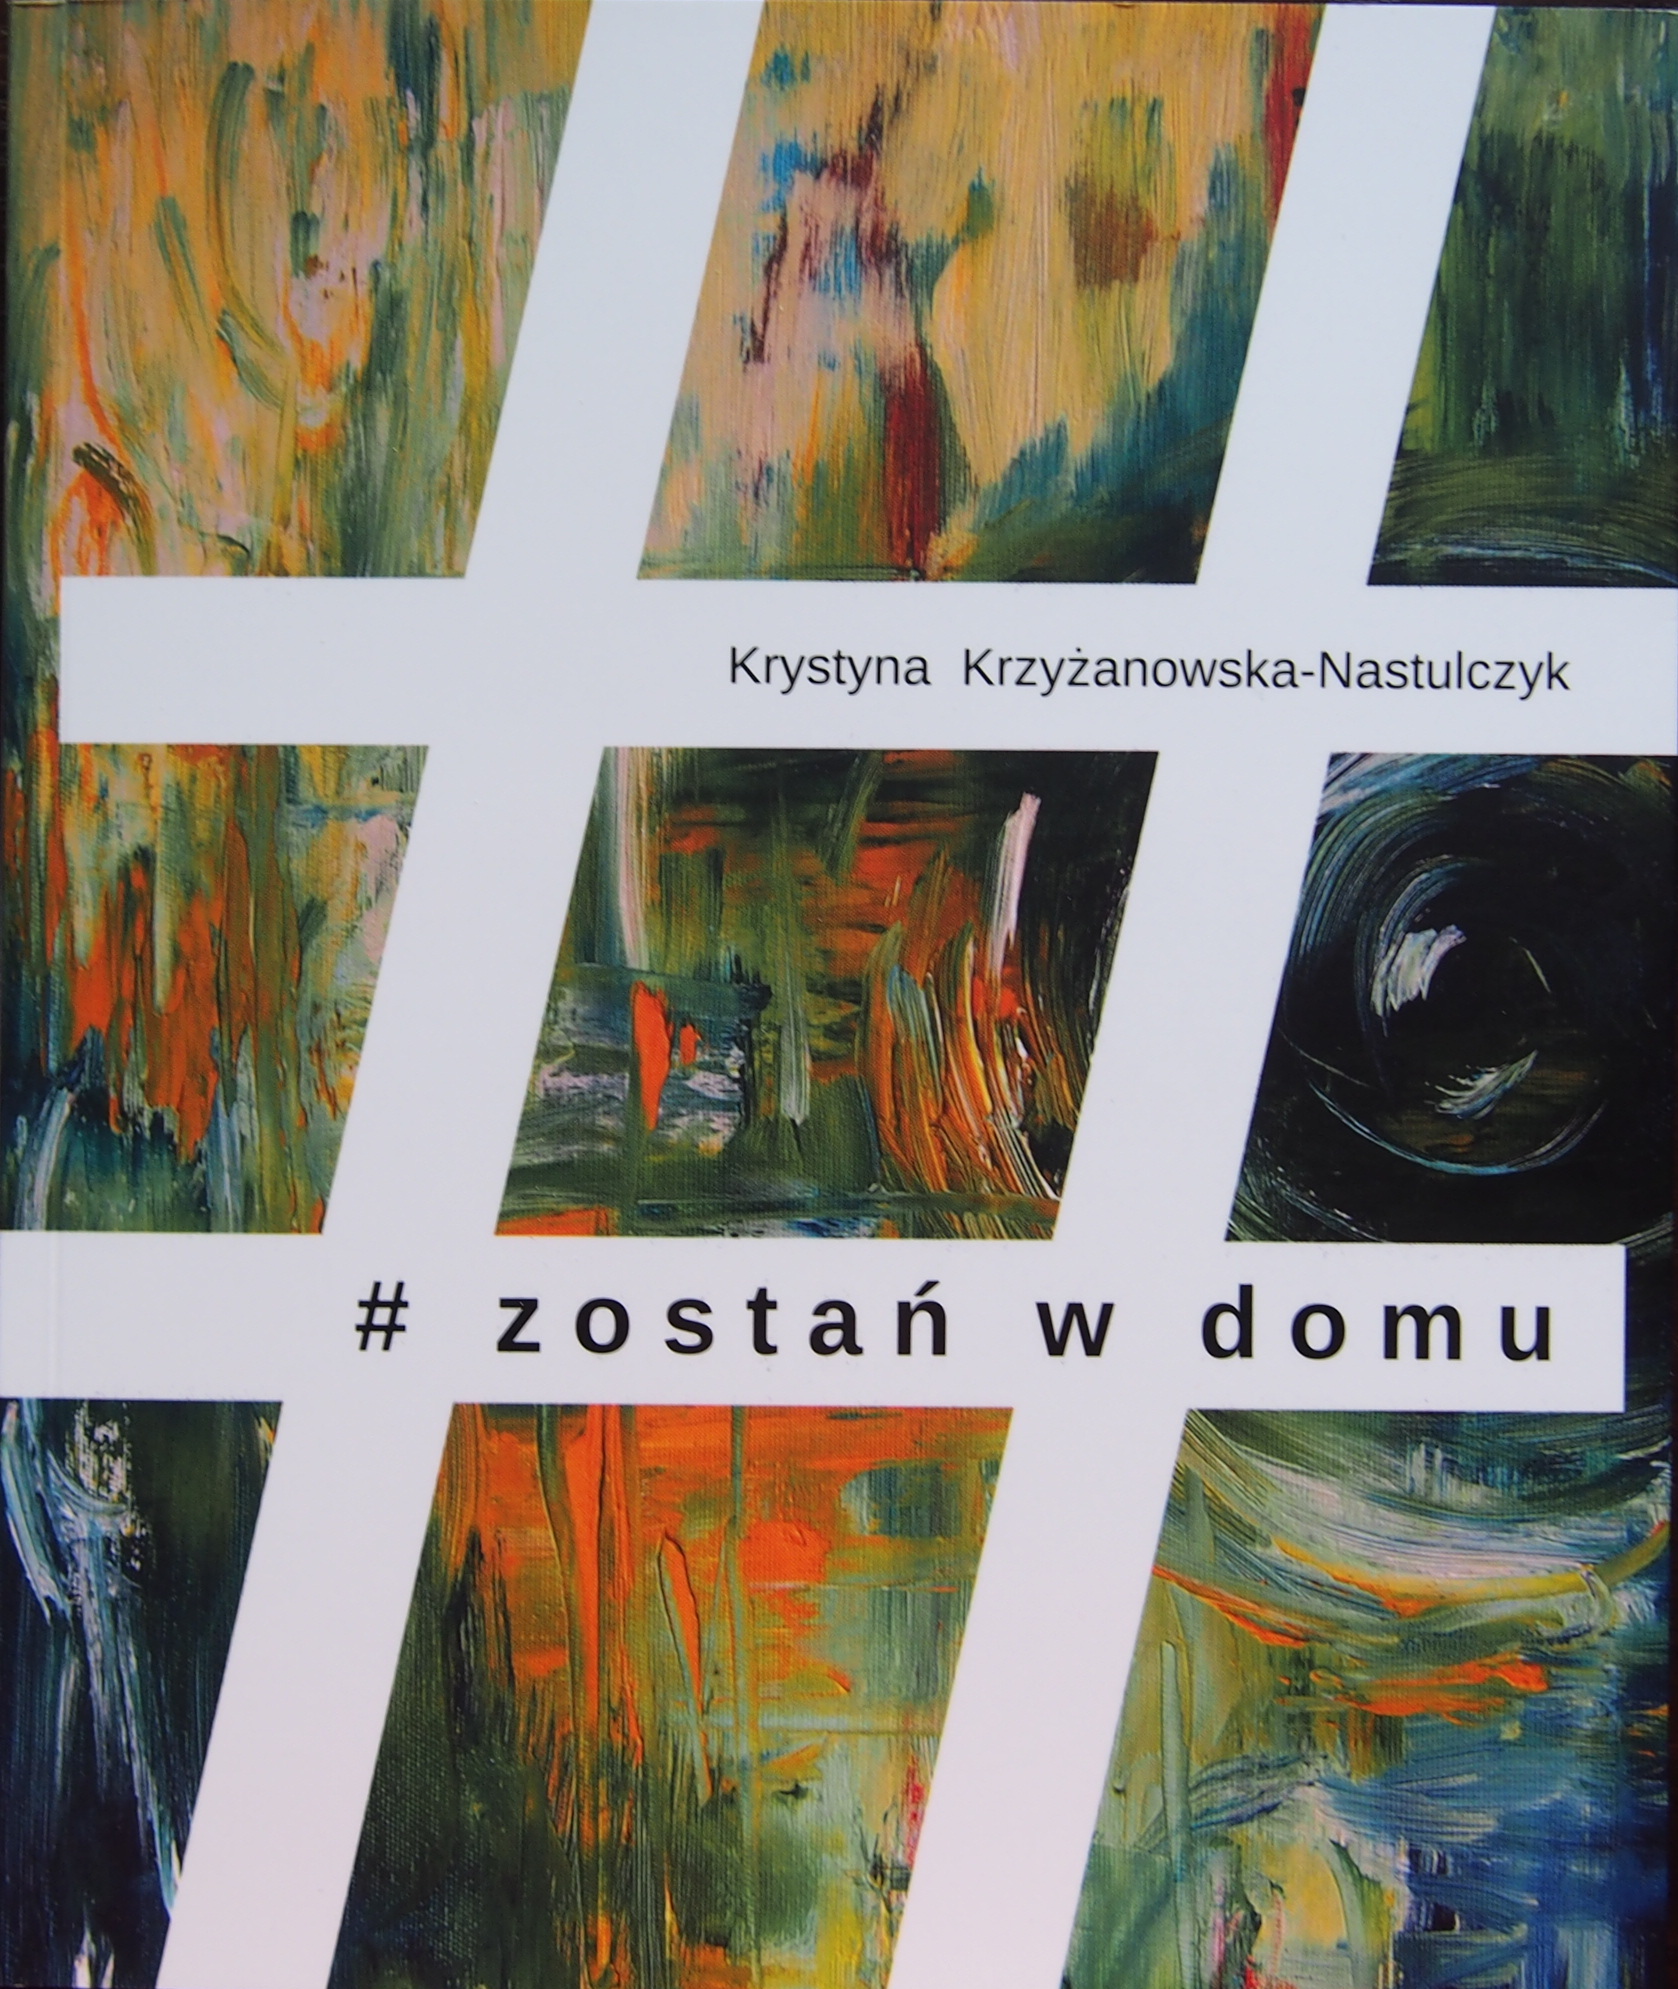  Krystyna Krzyżanowska-Nastulczyk: # zostań w domu
 Na zdjęciu okładka książki Krystyny Krzyżanowskiej-Nastulczyk